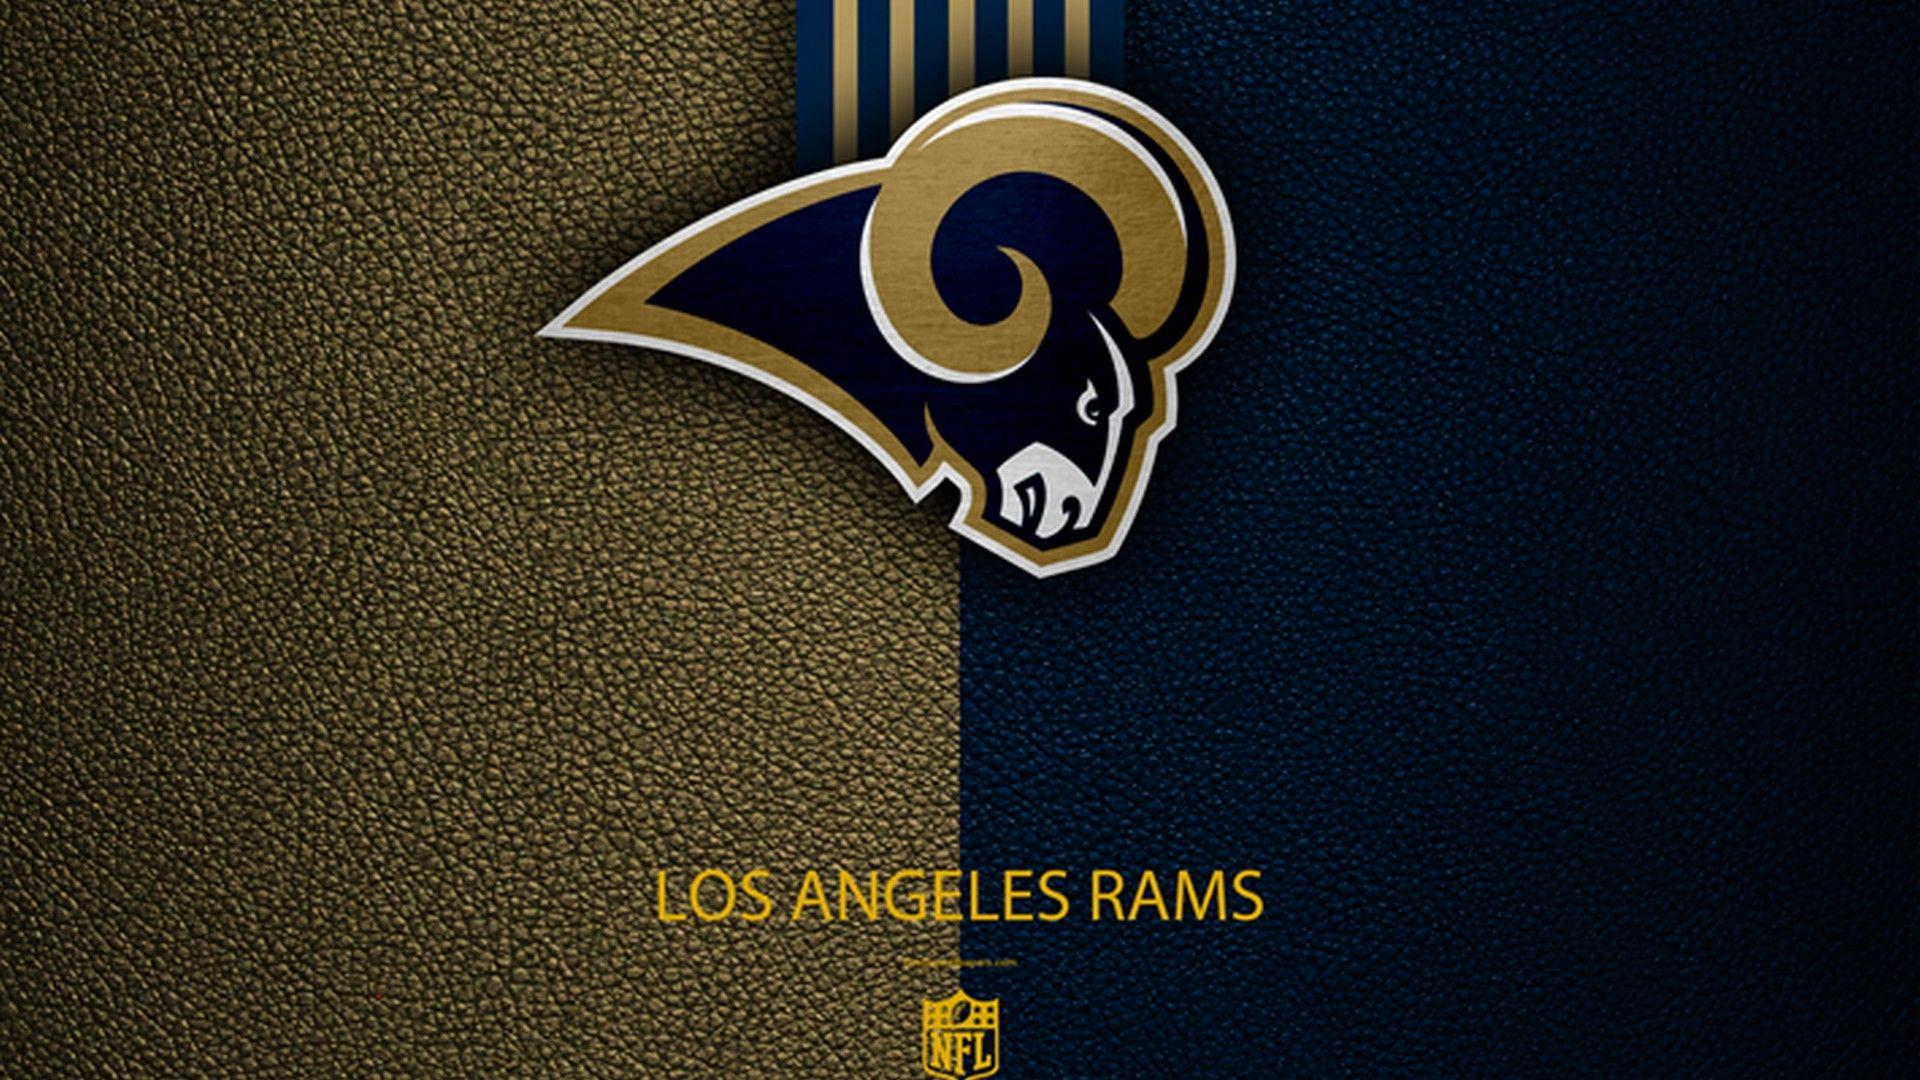 Wallpaper Los Angeles Rams. Nfl football, Football